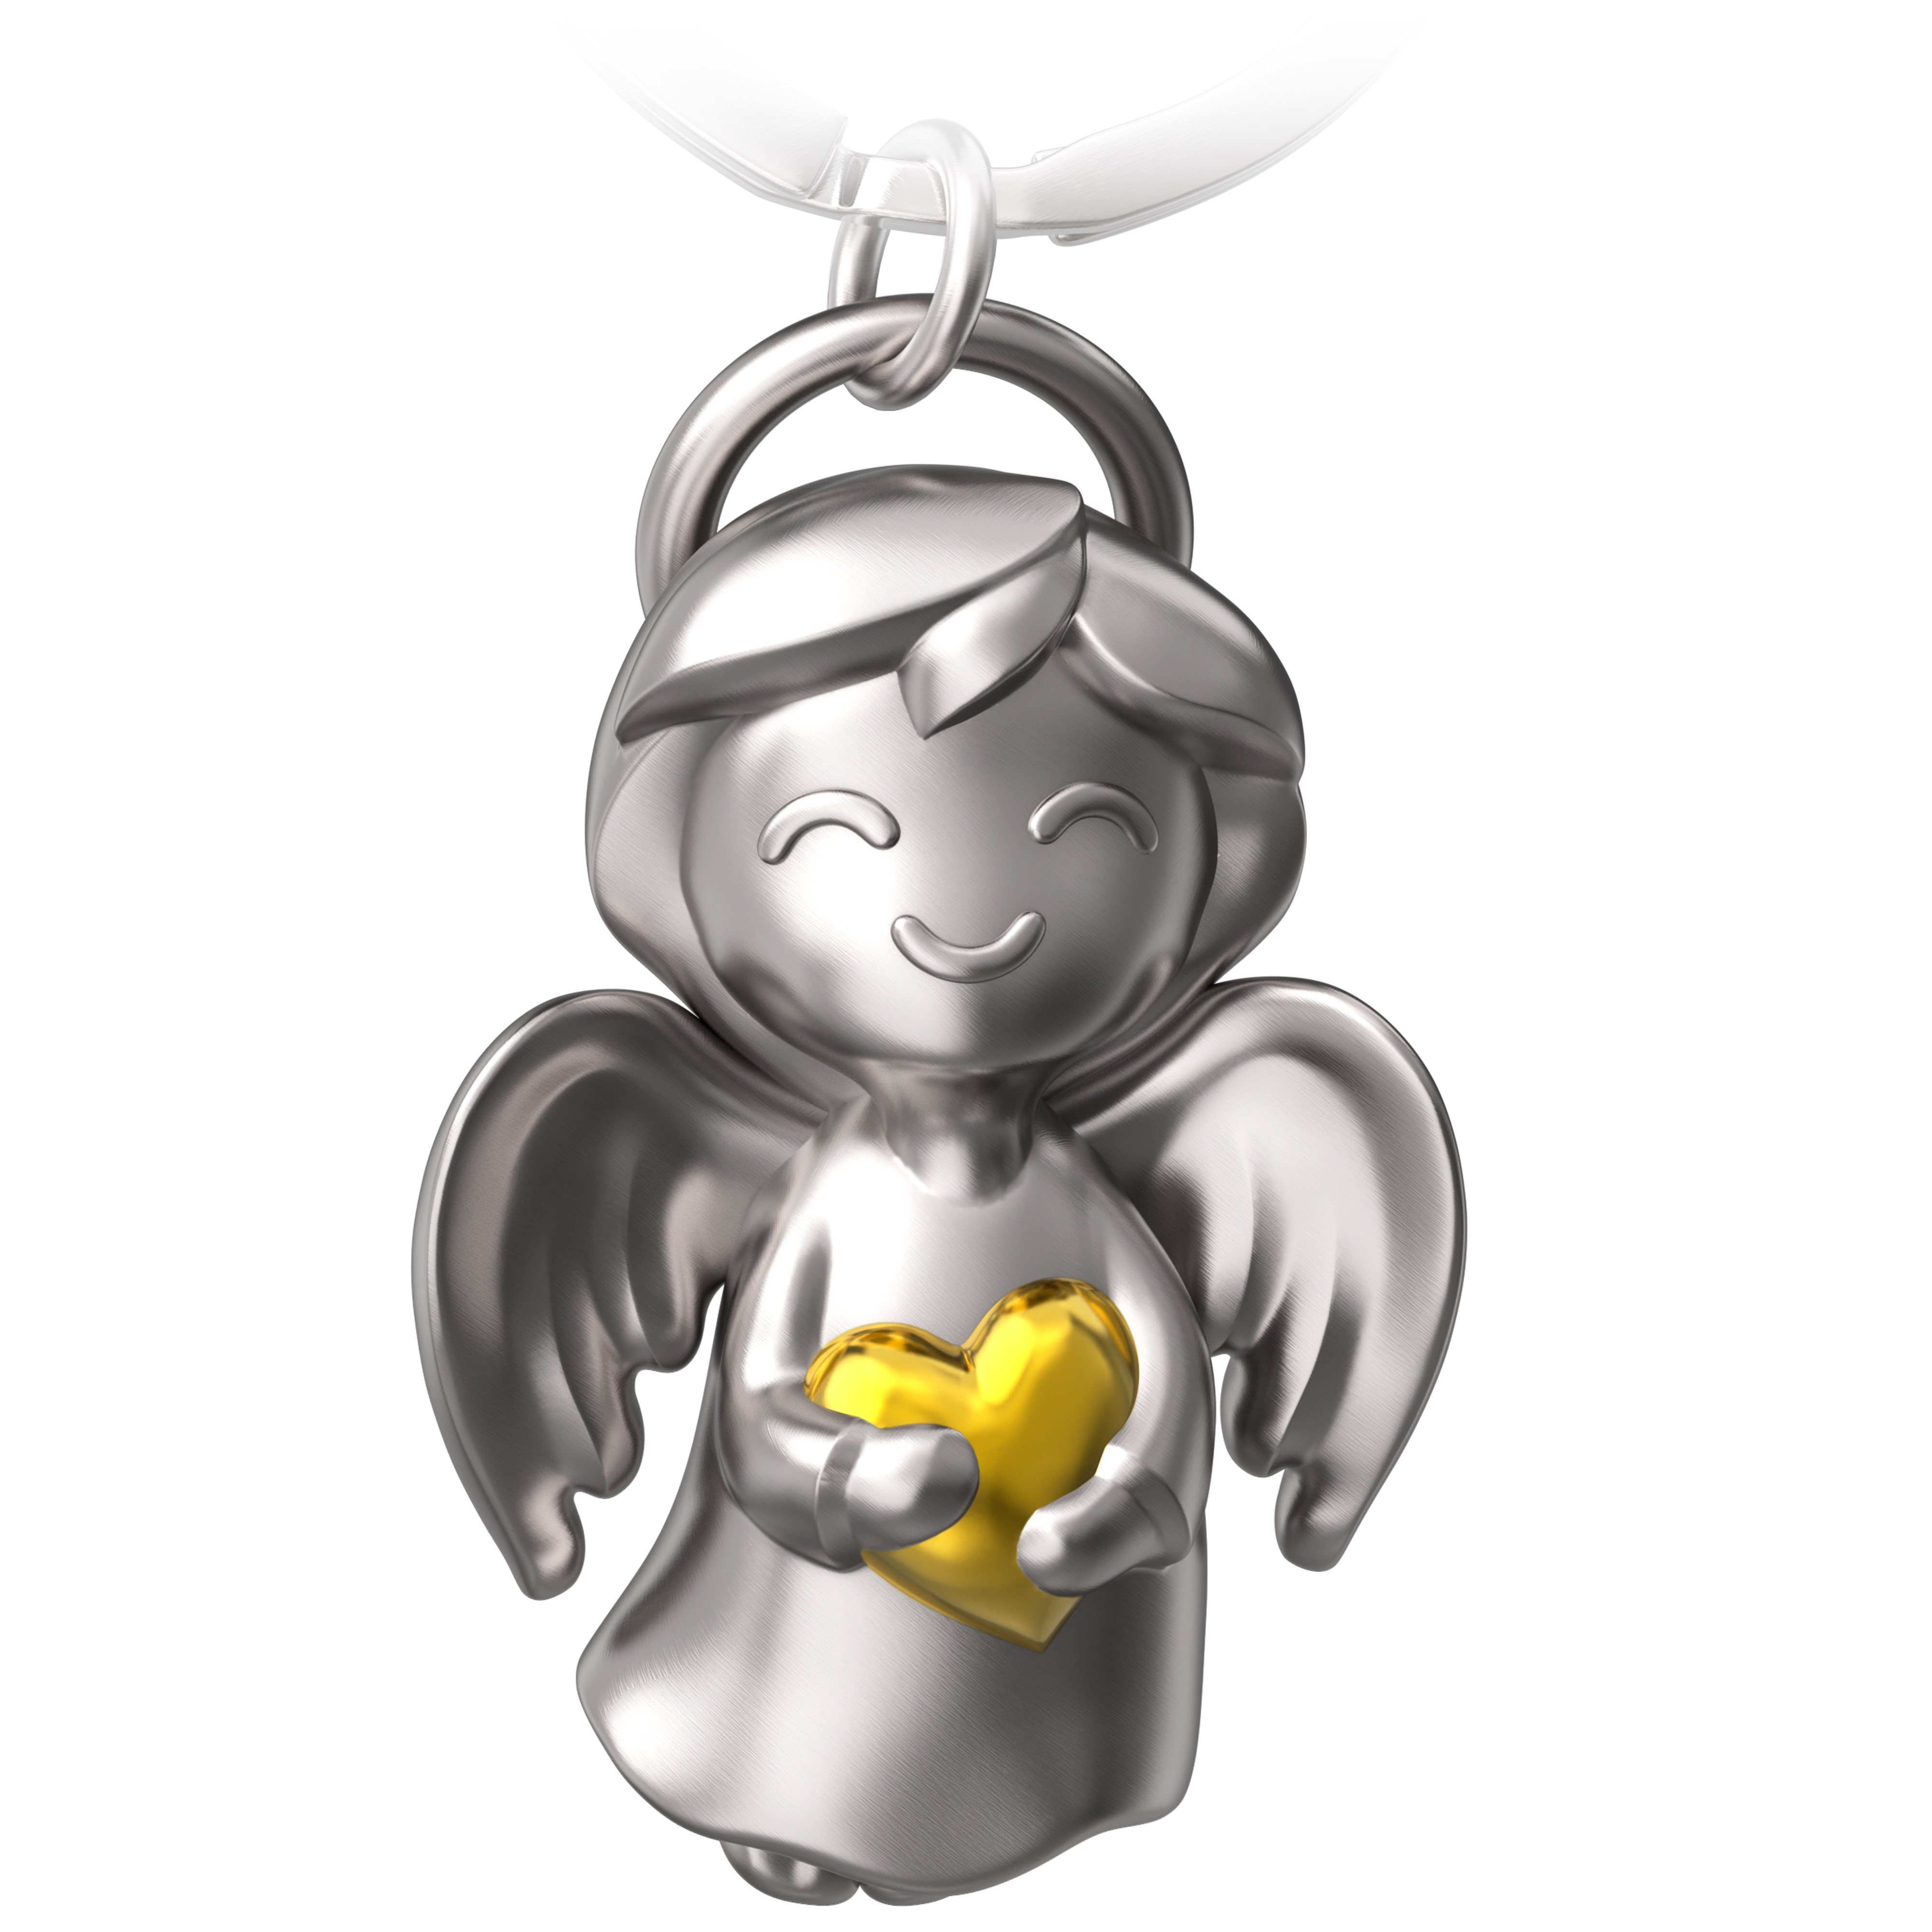 FABACH Schlüsselanhänger " Schutzengel Shiny" - Engel Glücksbringer - Glücksengel mit Herz Gold